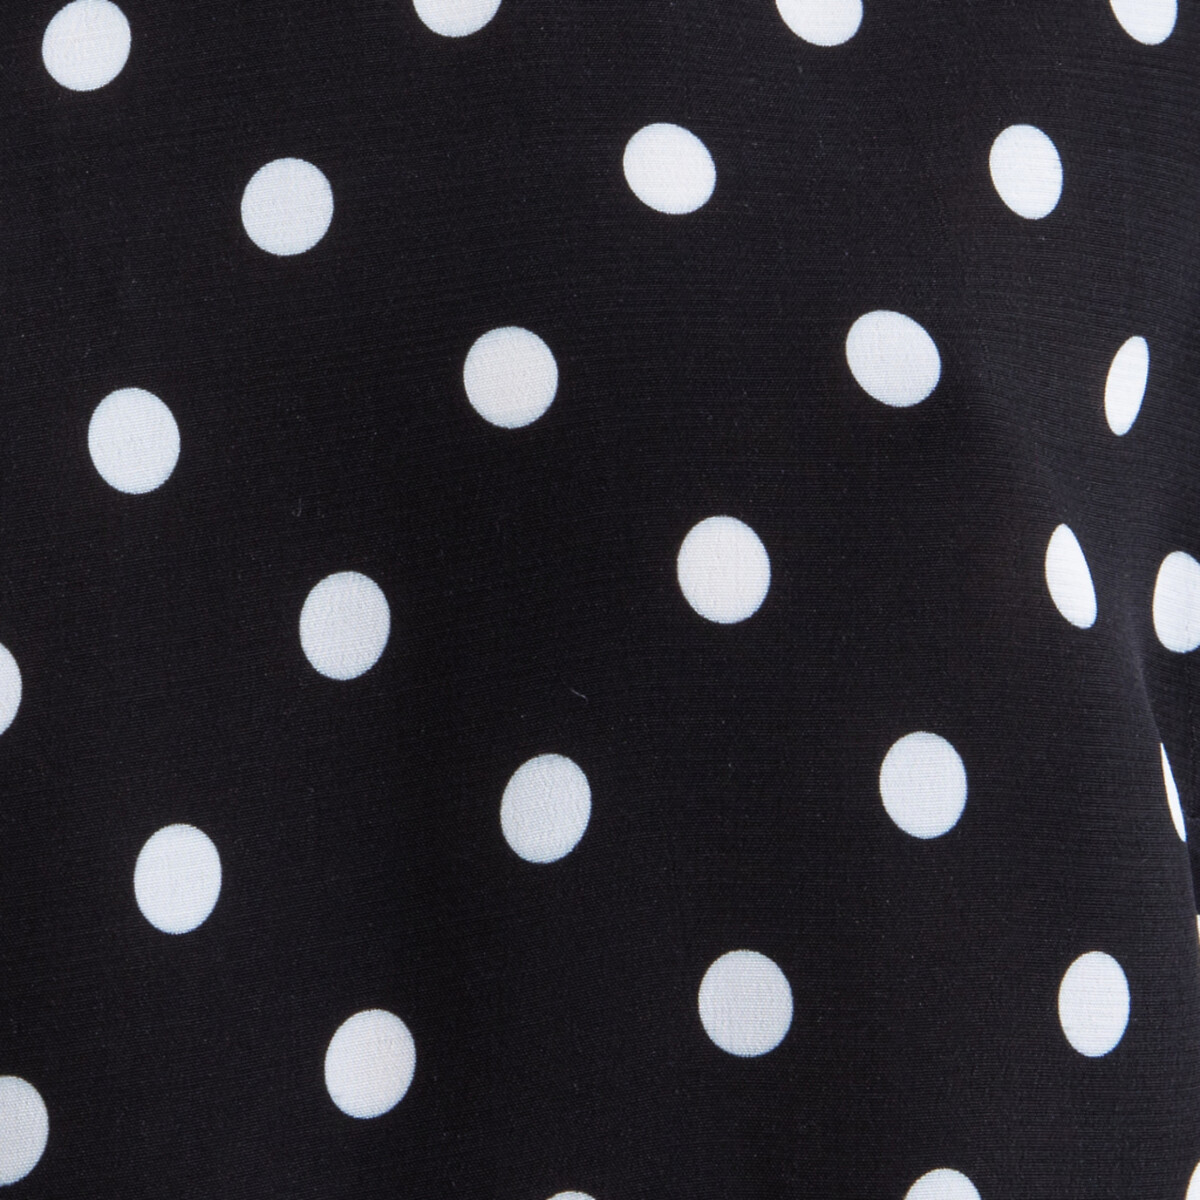 Блузка La Redoute В горошек с короткими рукавами ROMANE 36 (FR) - 42 (RUS) черный, размер 36 (FR) - 42 (RUS) В горошек с короткими рукавами ROMANE 36 (FR) - 42 (RUS) черный - фото 4